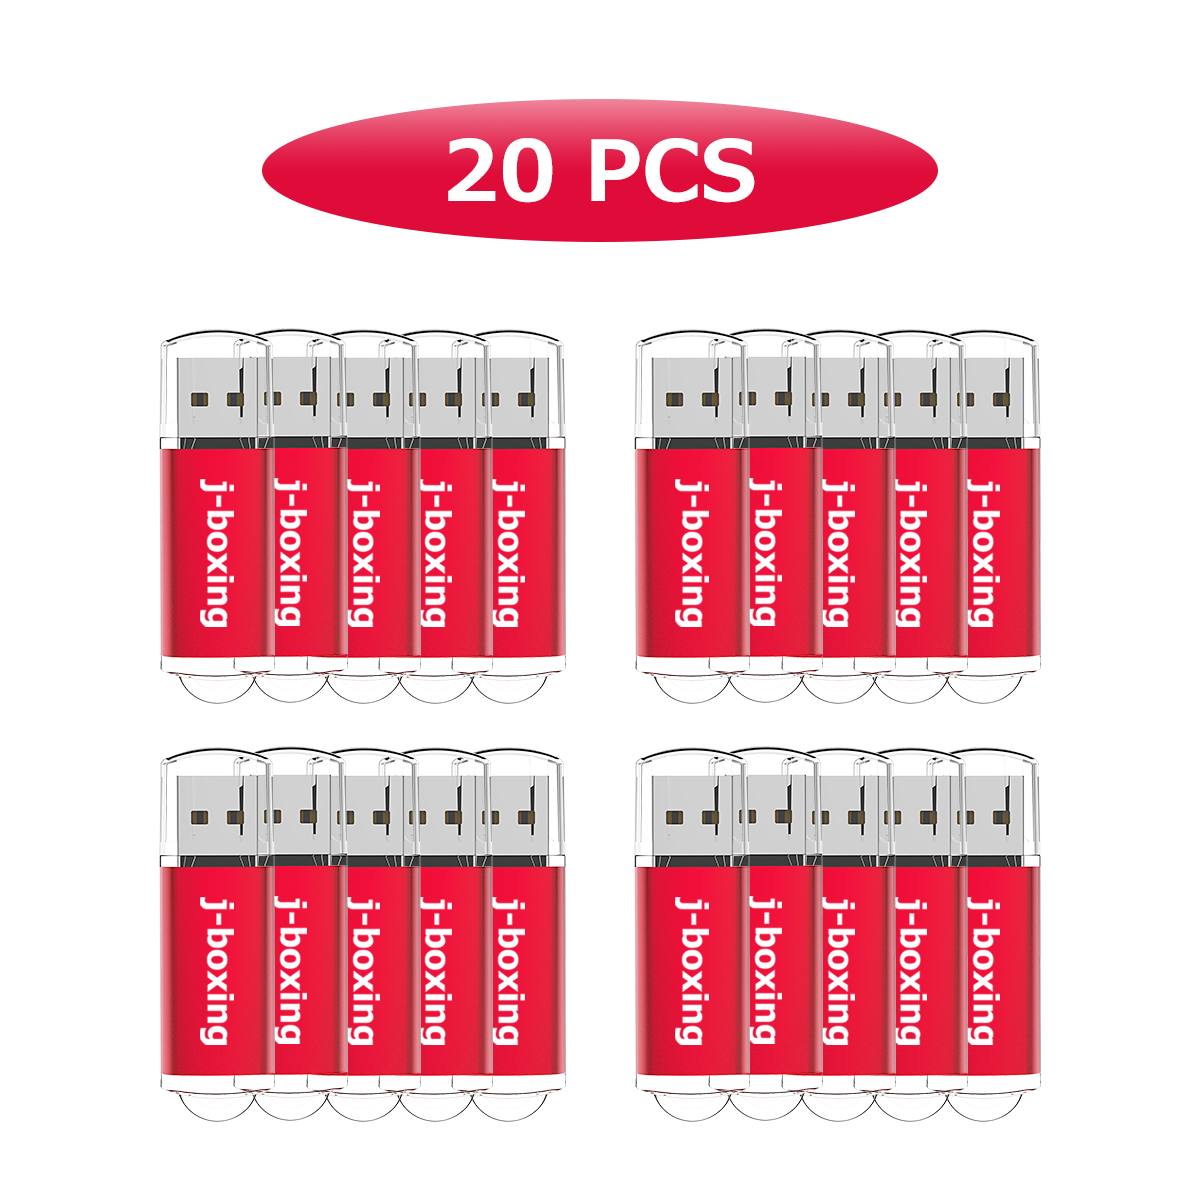 20PCS 512MB USB 2.0フラッシュドライブ長方形フラッシュペンドライブコンピューターラップトップタブレットマックマルチカラー用高速親指メモリスティックストレージ